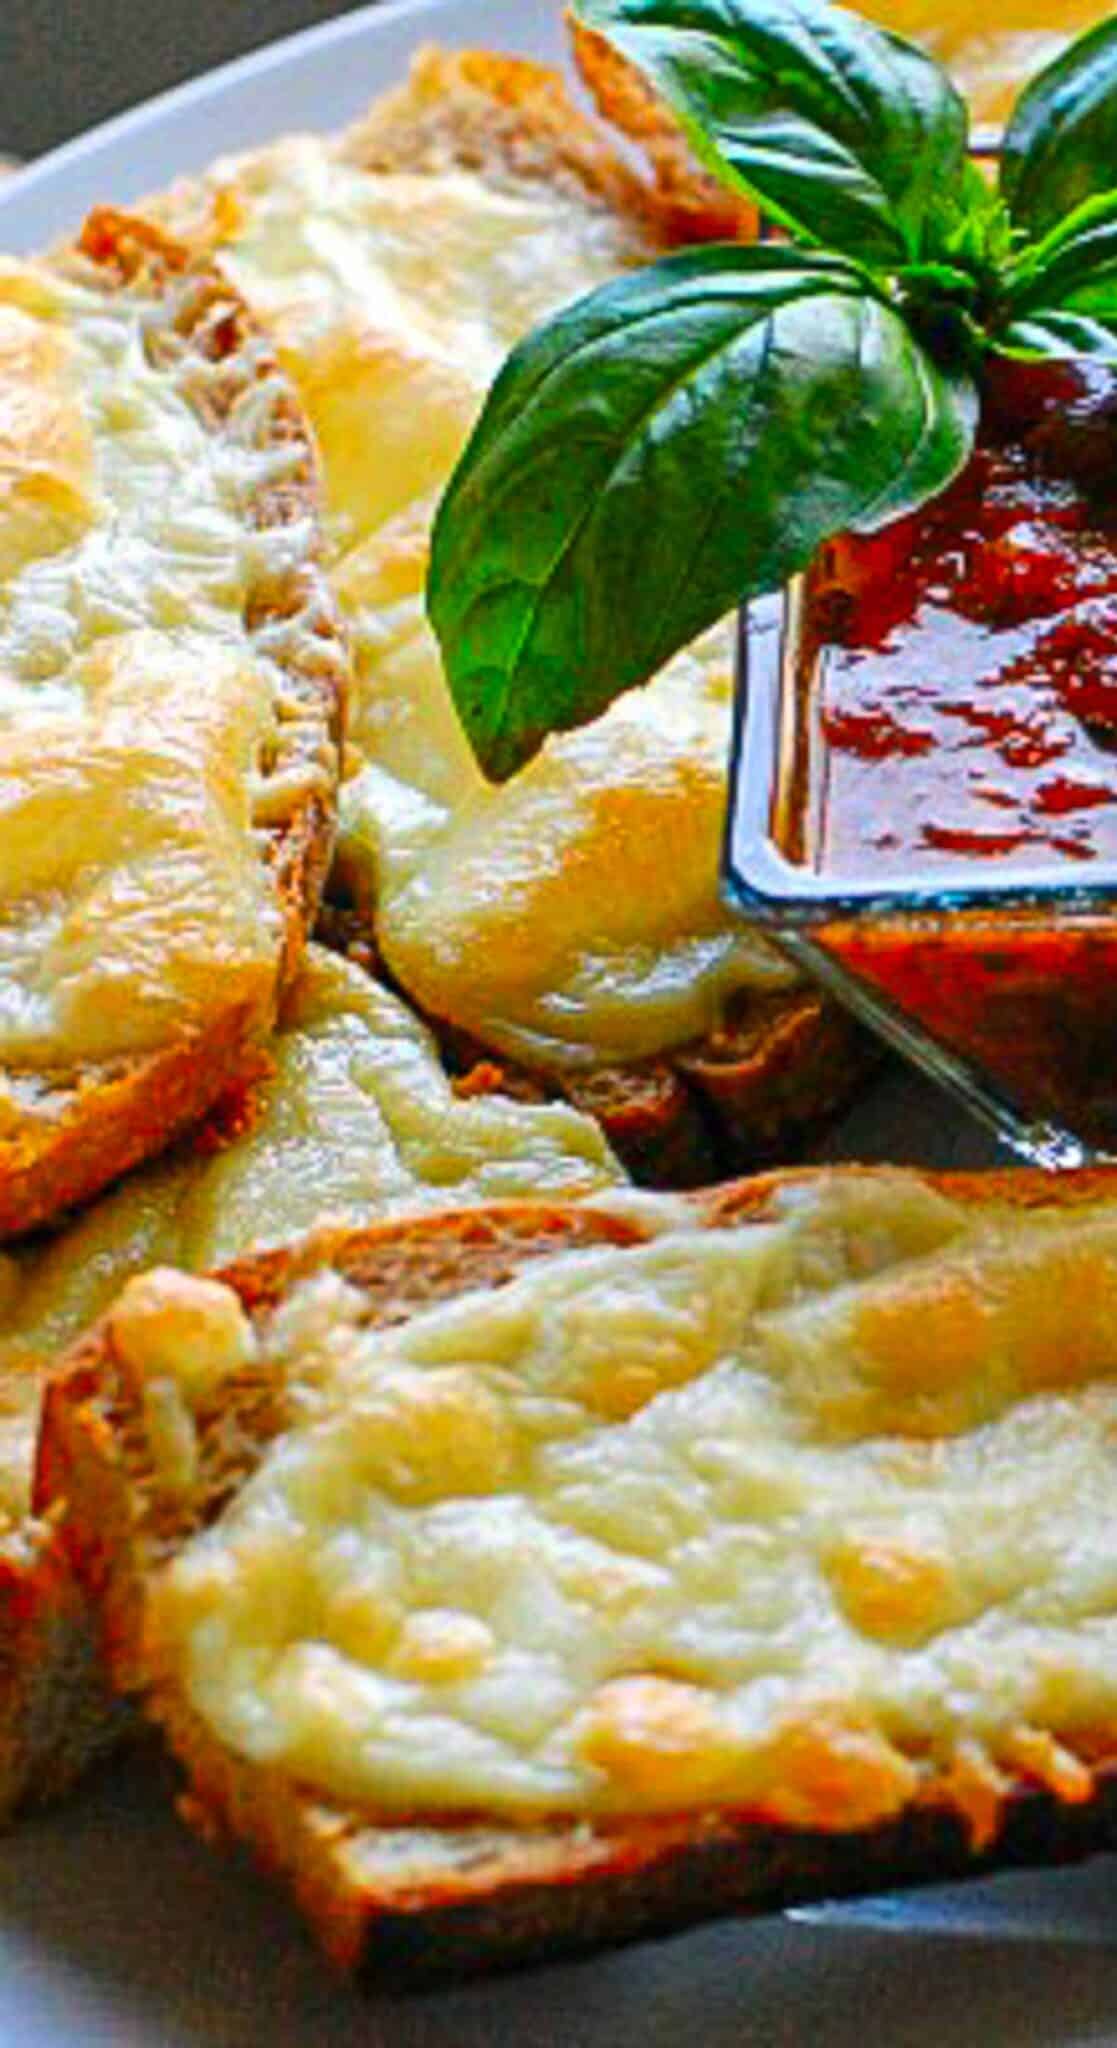 Cheesy Italian toasts with marinara sauce.